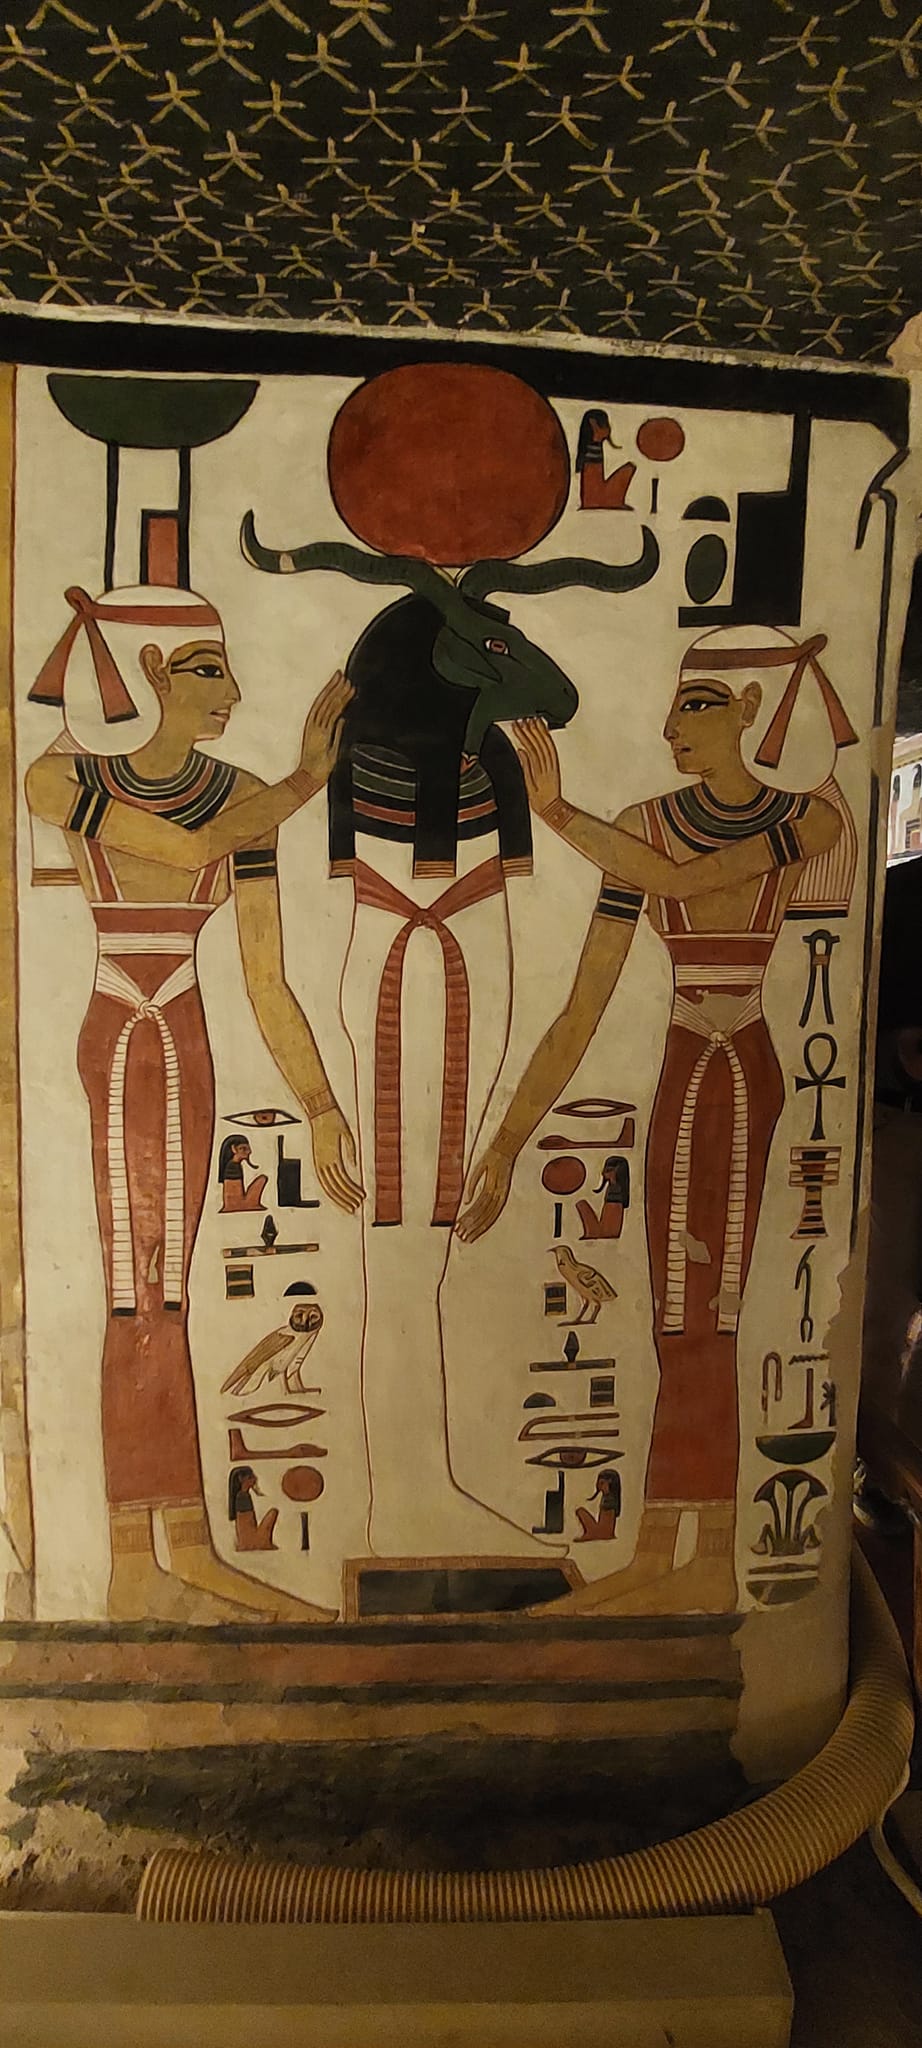 رسومات فرعونية بديعة على المقابر الفرعونية